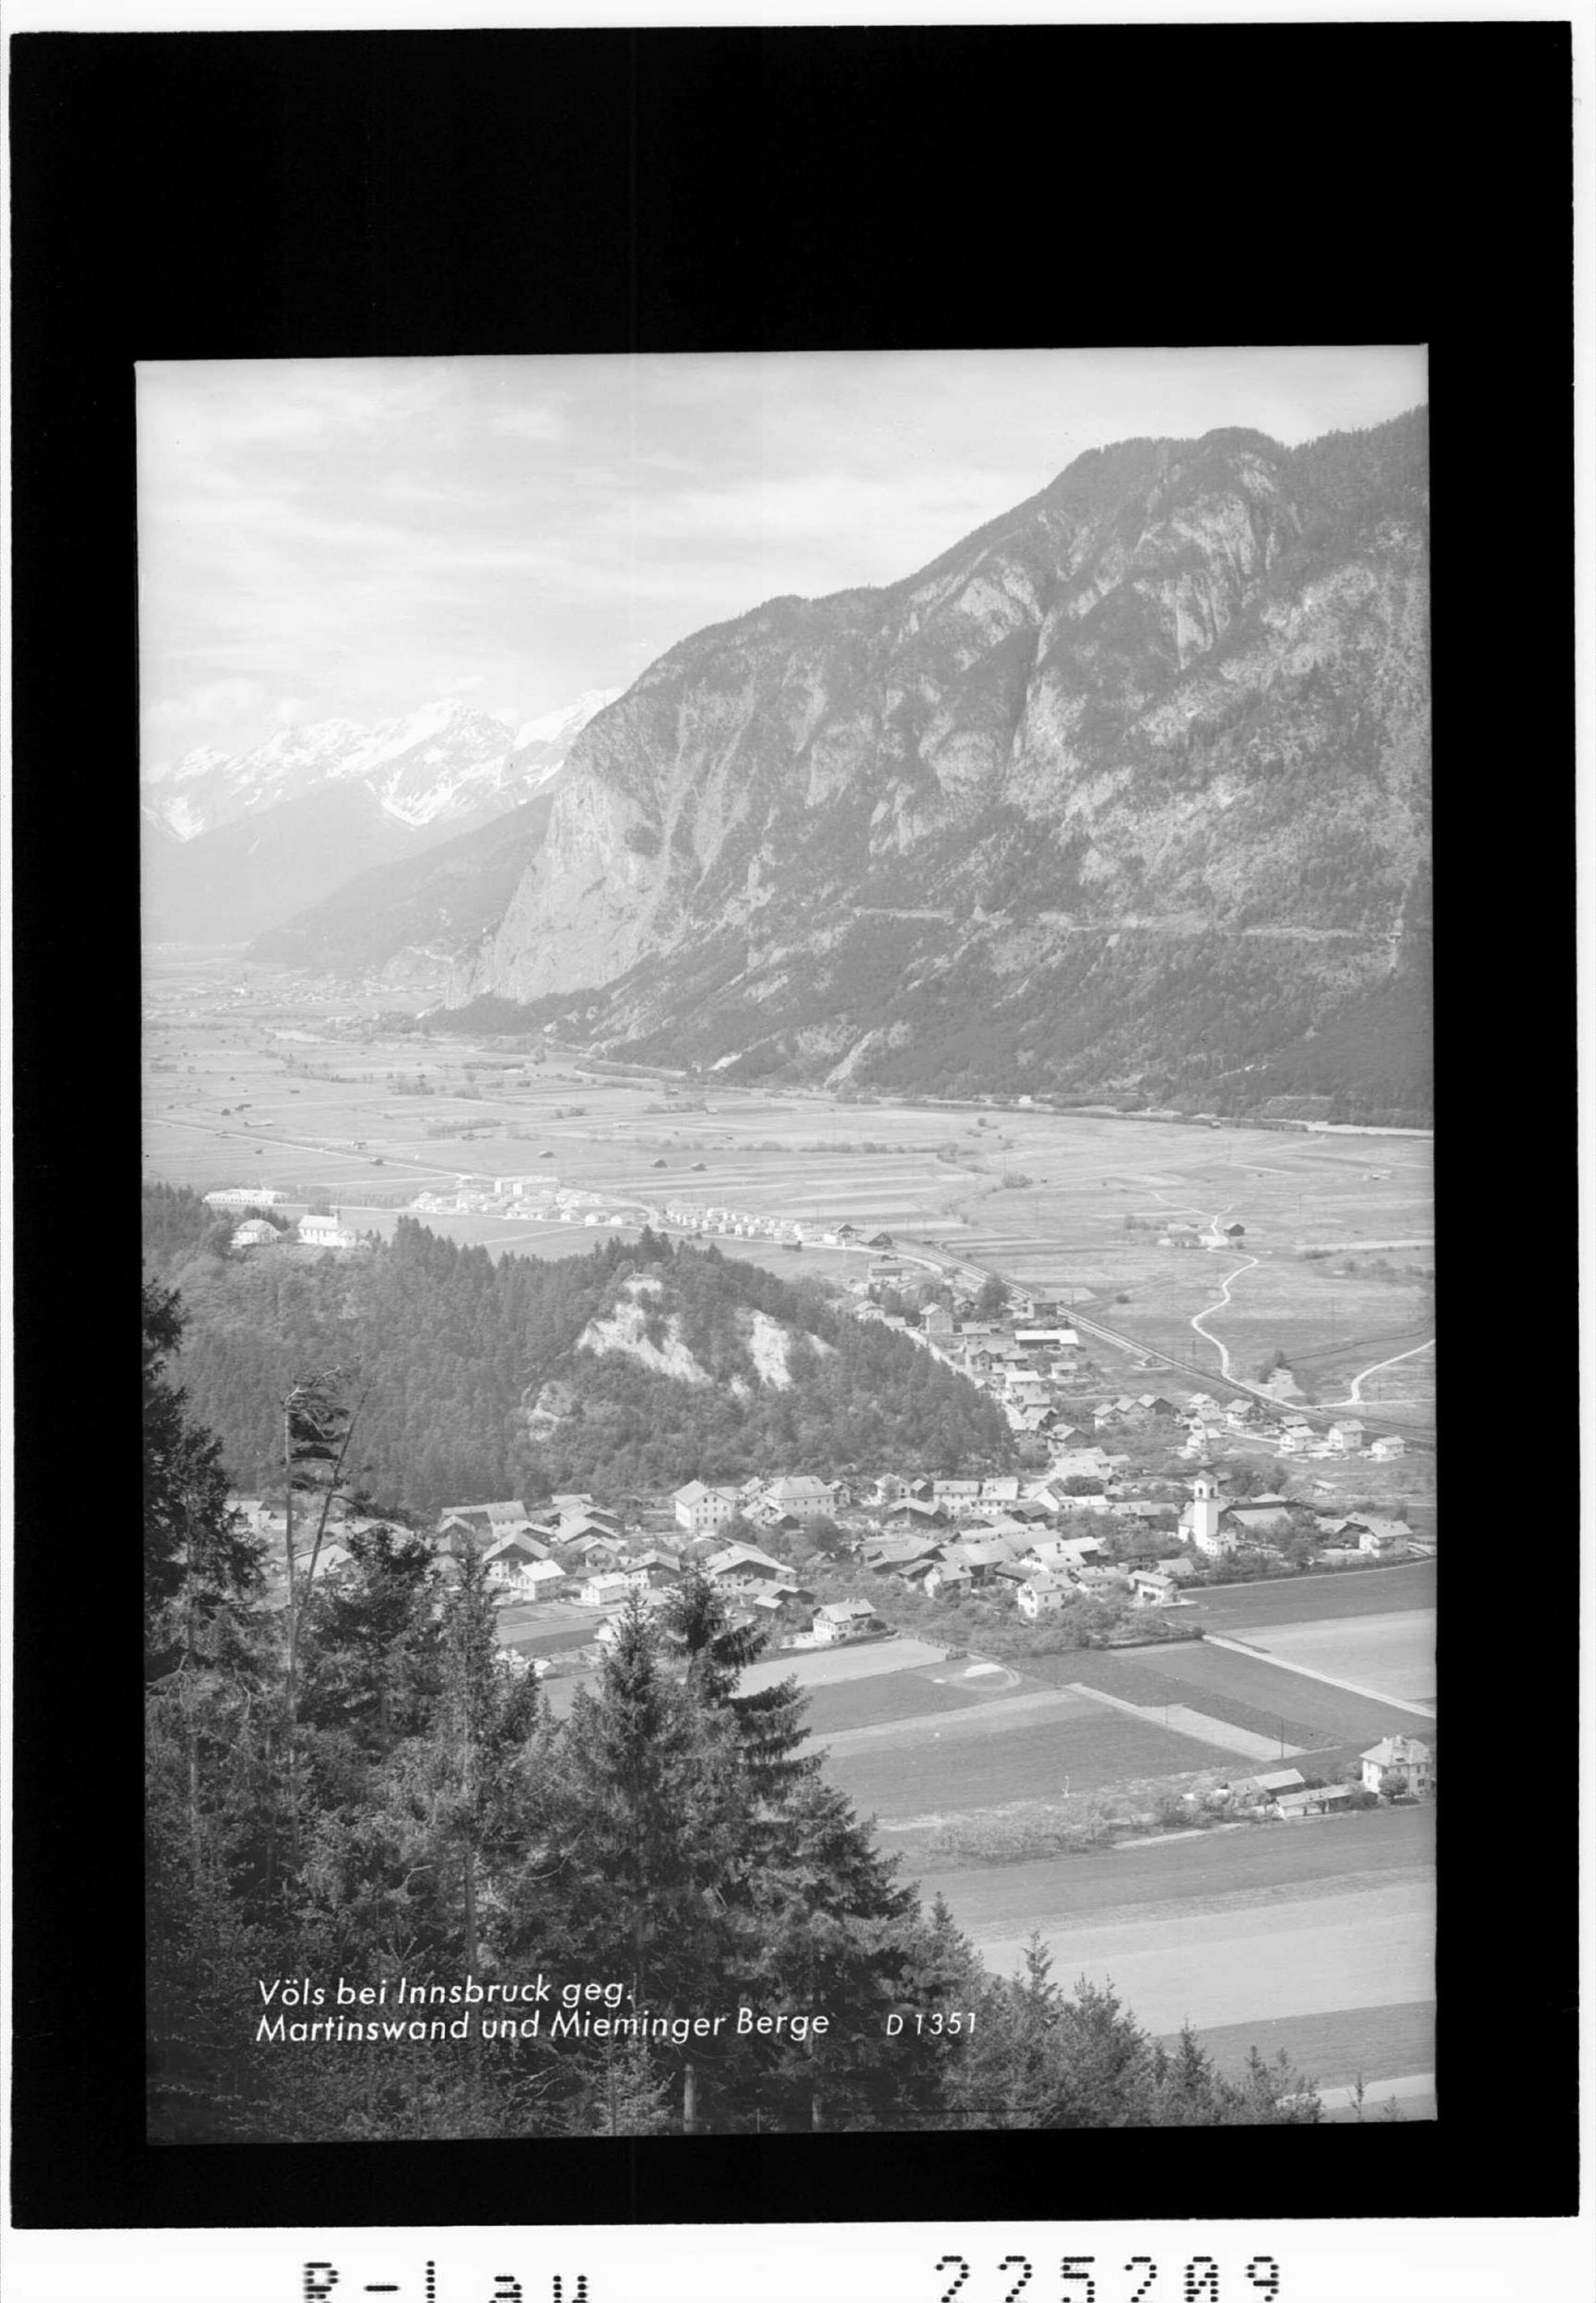 Völs bei Innsbruck gegen Martinswand und Mieminger Berge></div>


    <hr>
    <div class=